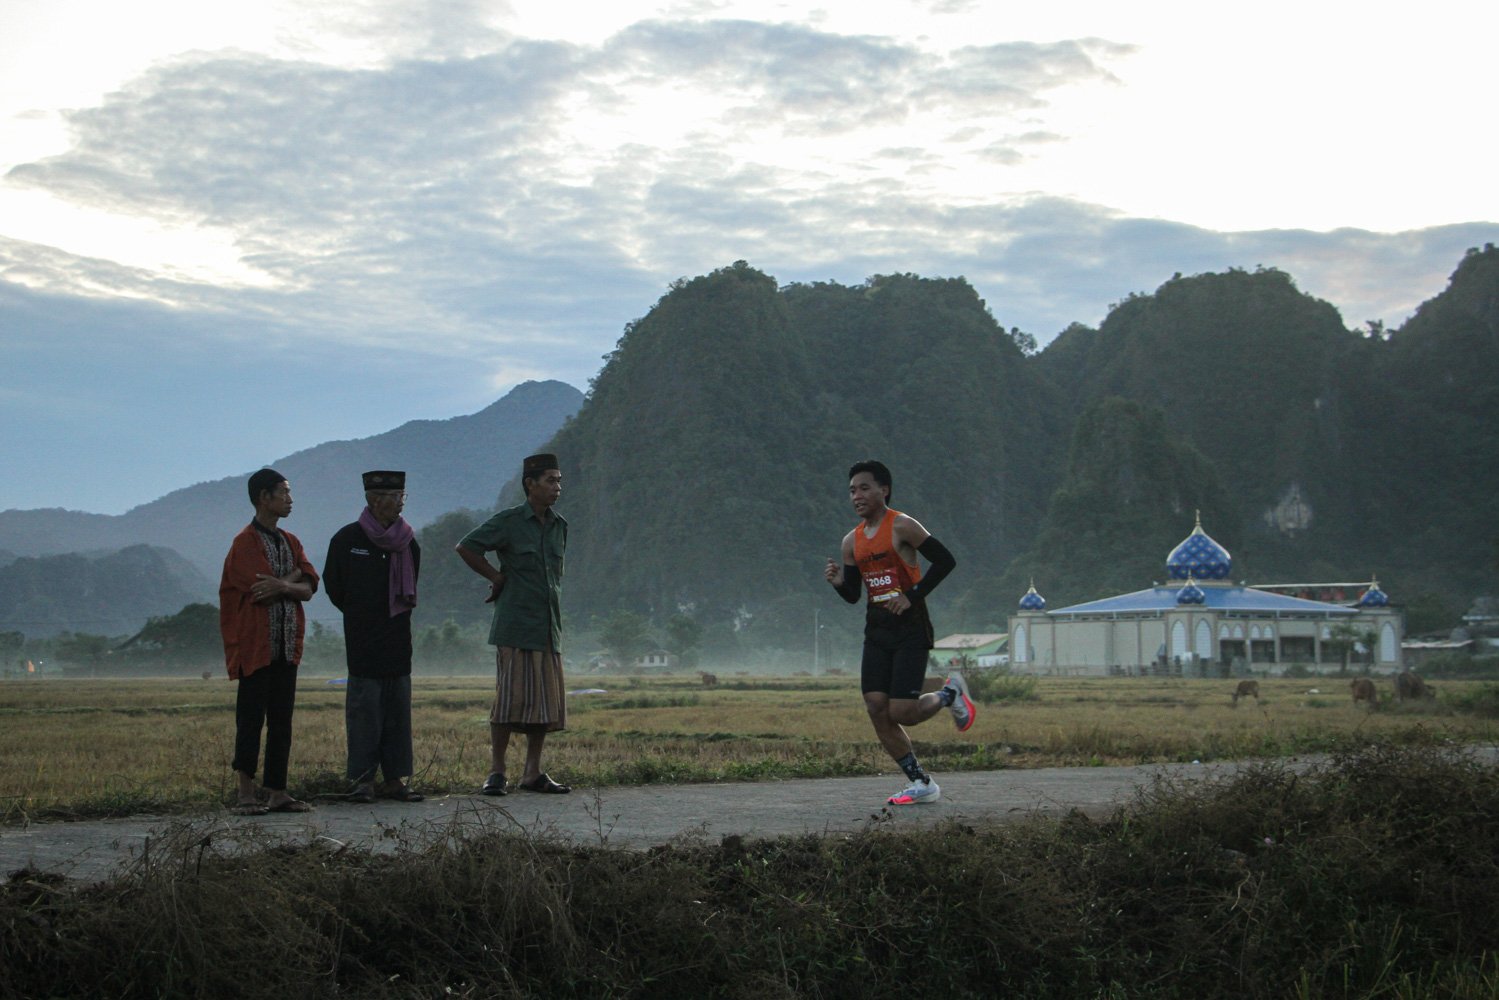 Warga melihat peserta lomba lari Geopark Half Marathon di kawasan Geopark Maros Pangkep di Kecamatan Bantimurung, Kabupaten Maros, Sulawaesi Selatan.